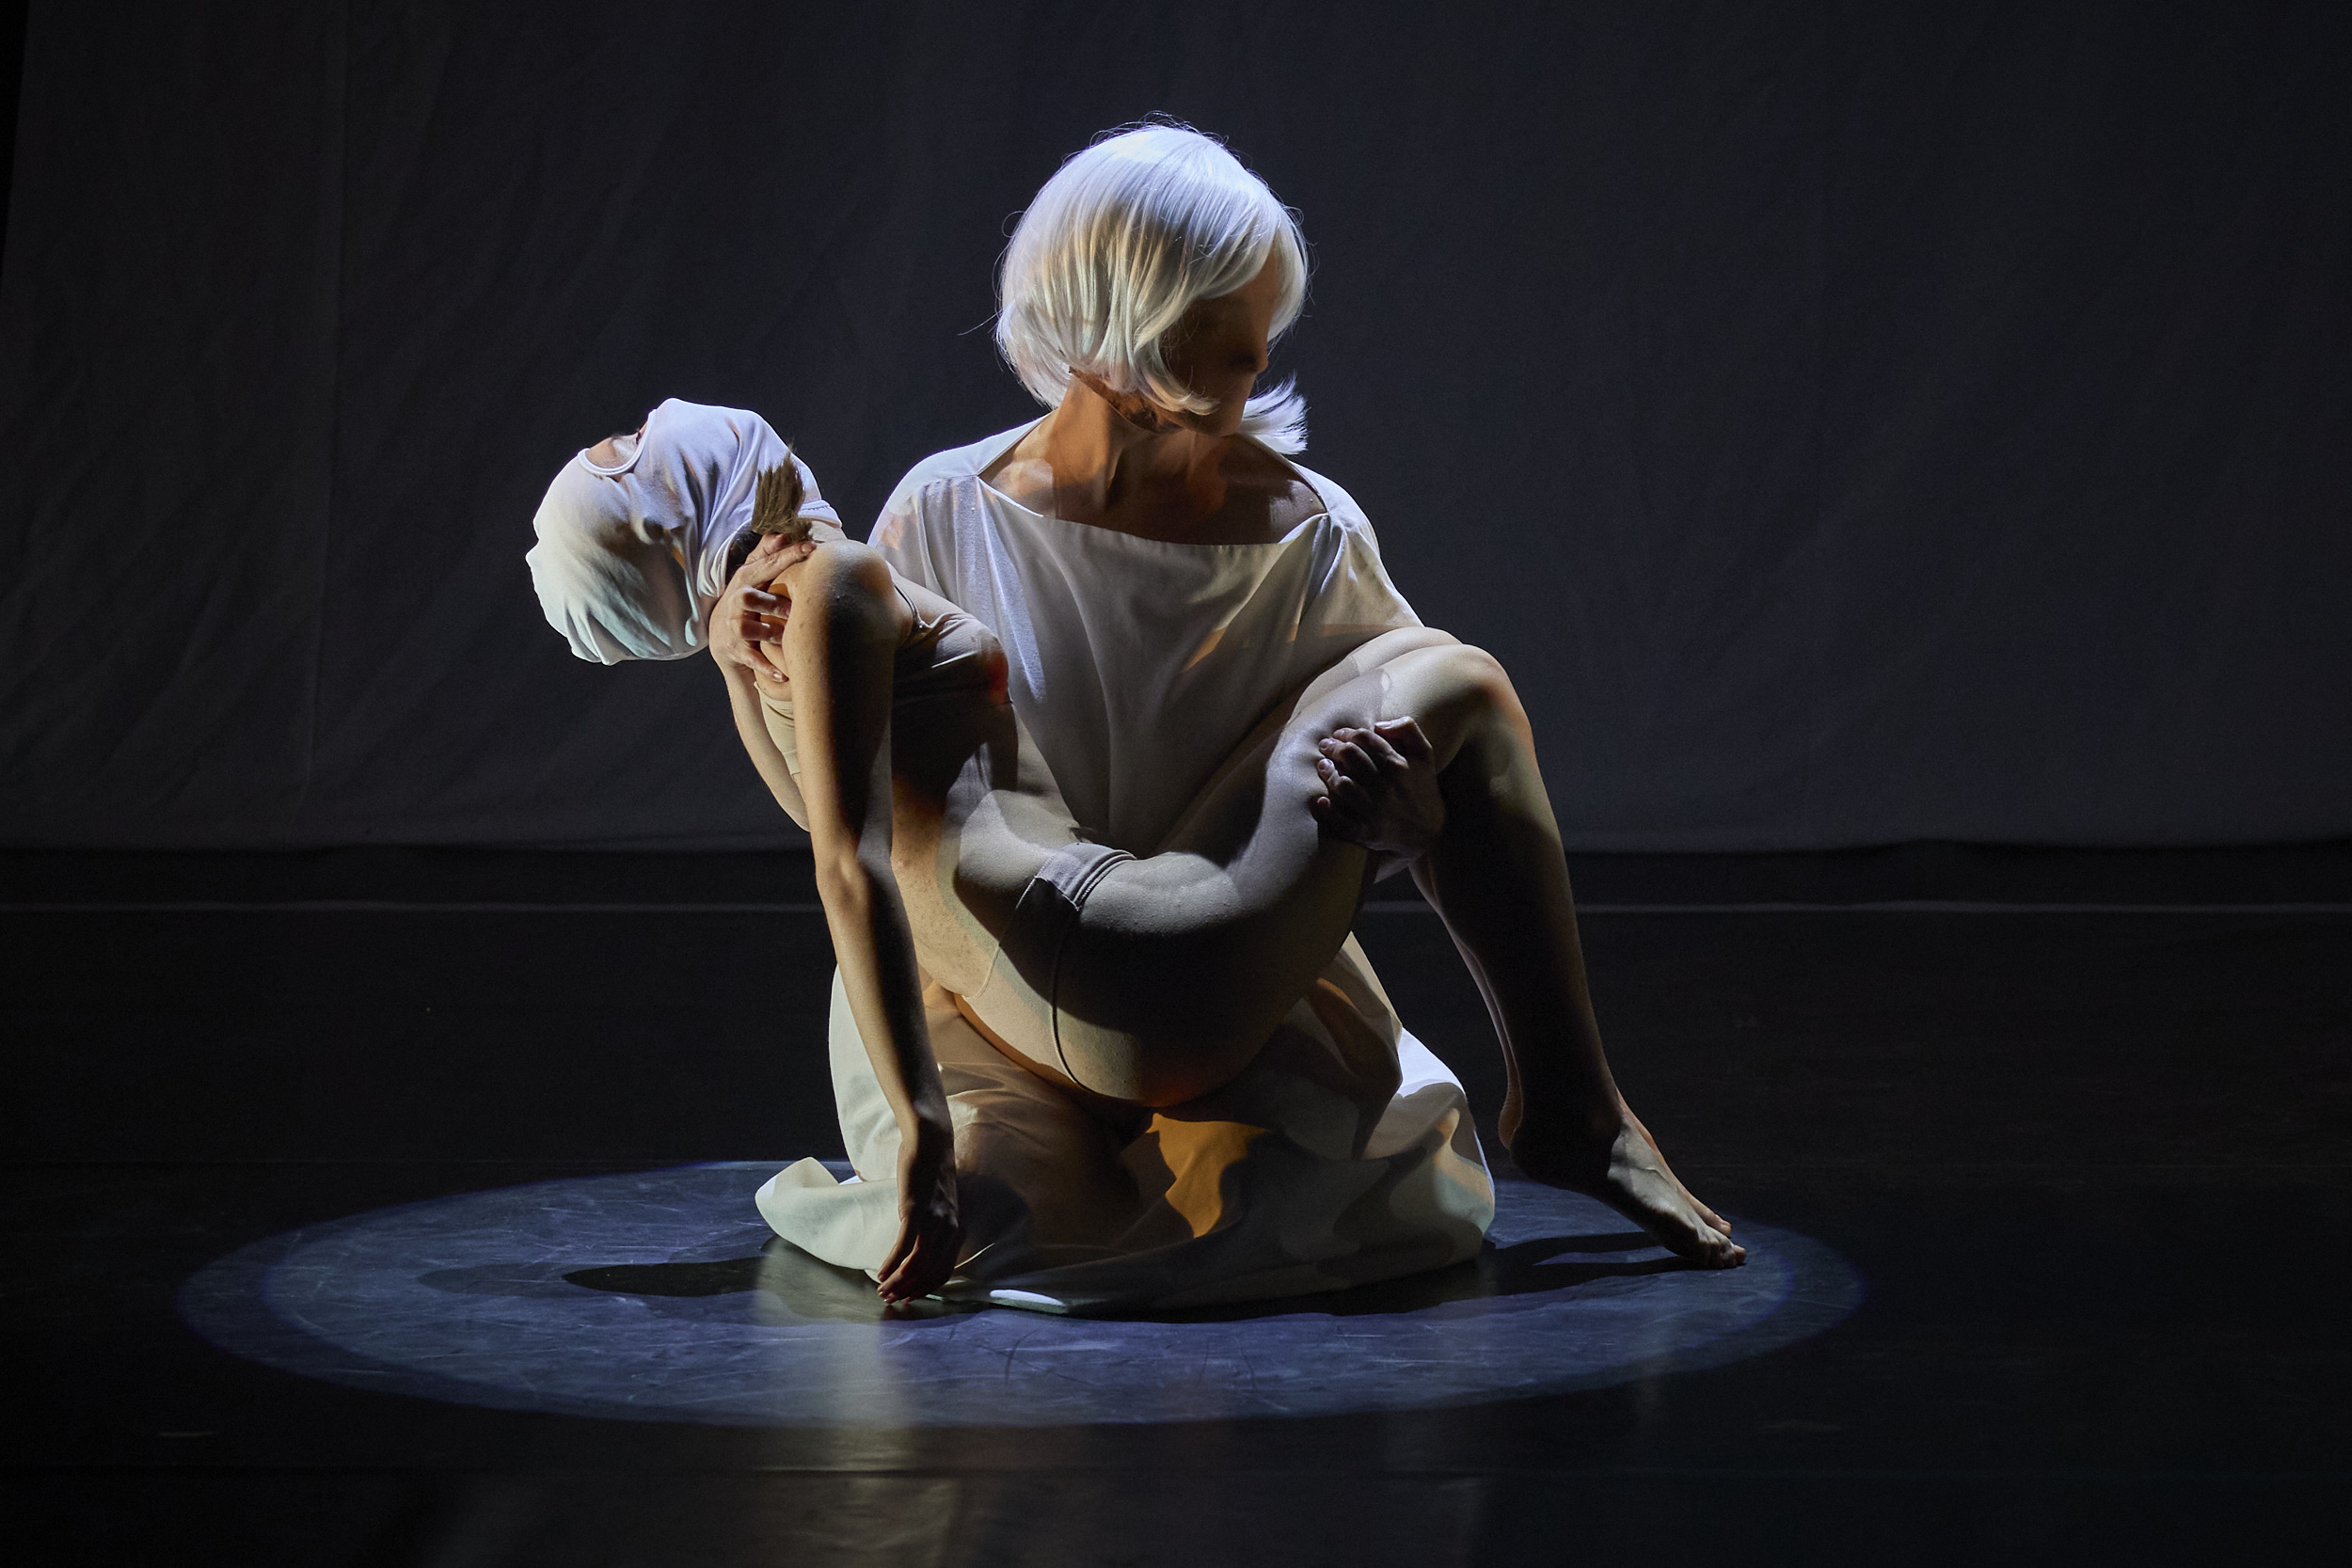 Escena de una representación teatral en la que aparece una persona de rodillas sujetando a otra en brazos